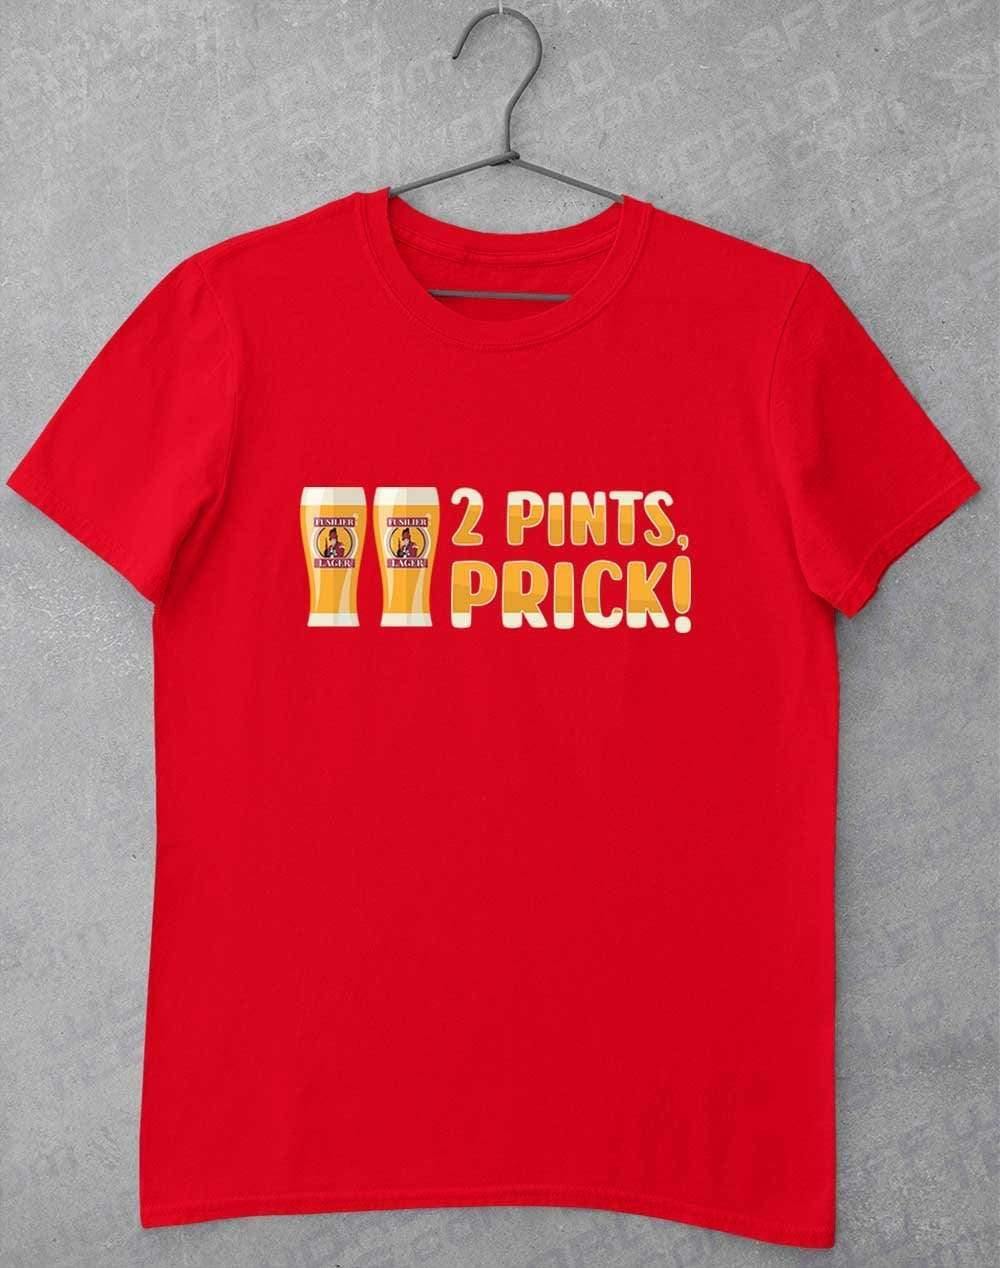 2 Pints Pr*ck T-Shirt S / Red  - Off World Tees